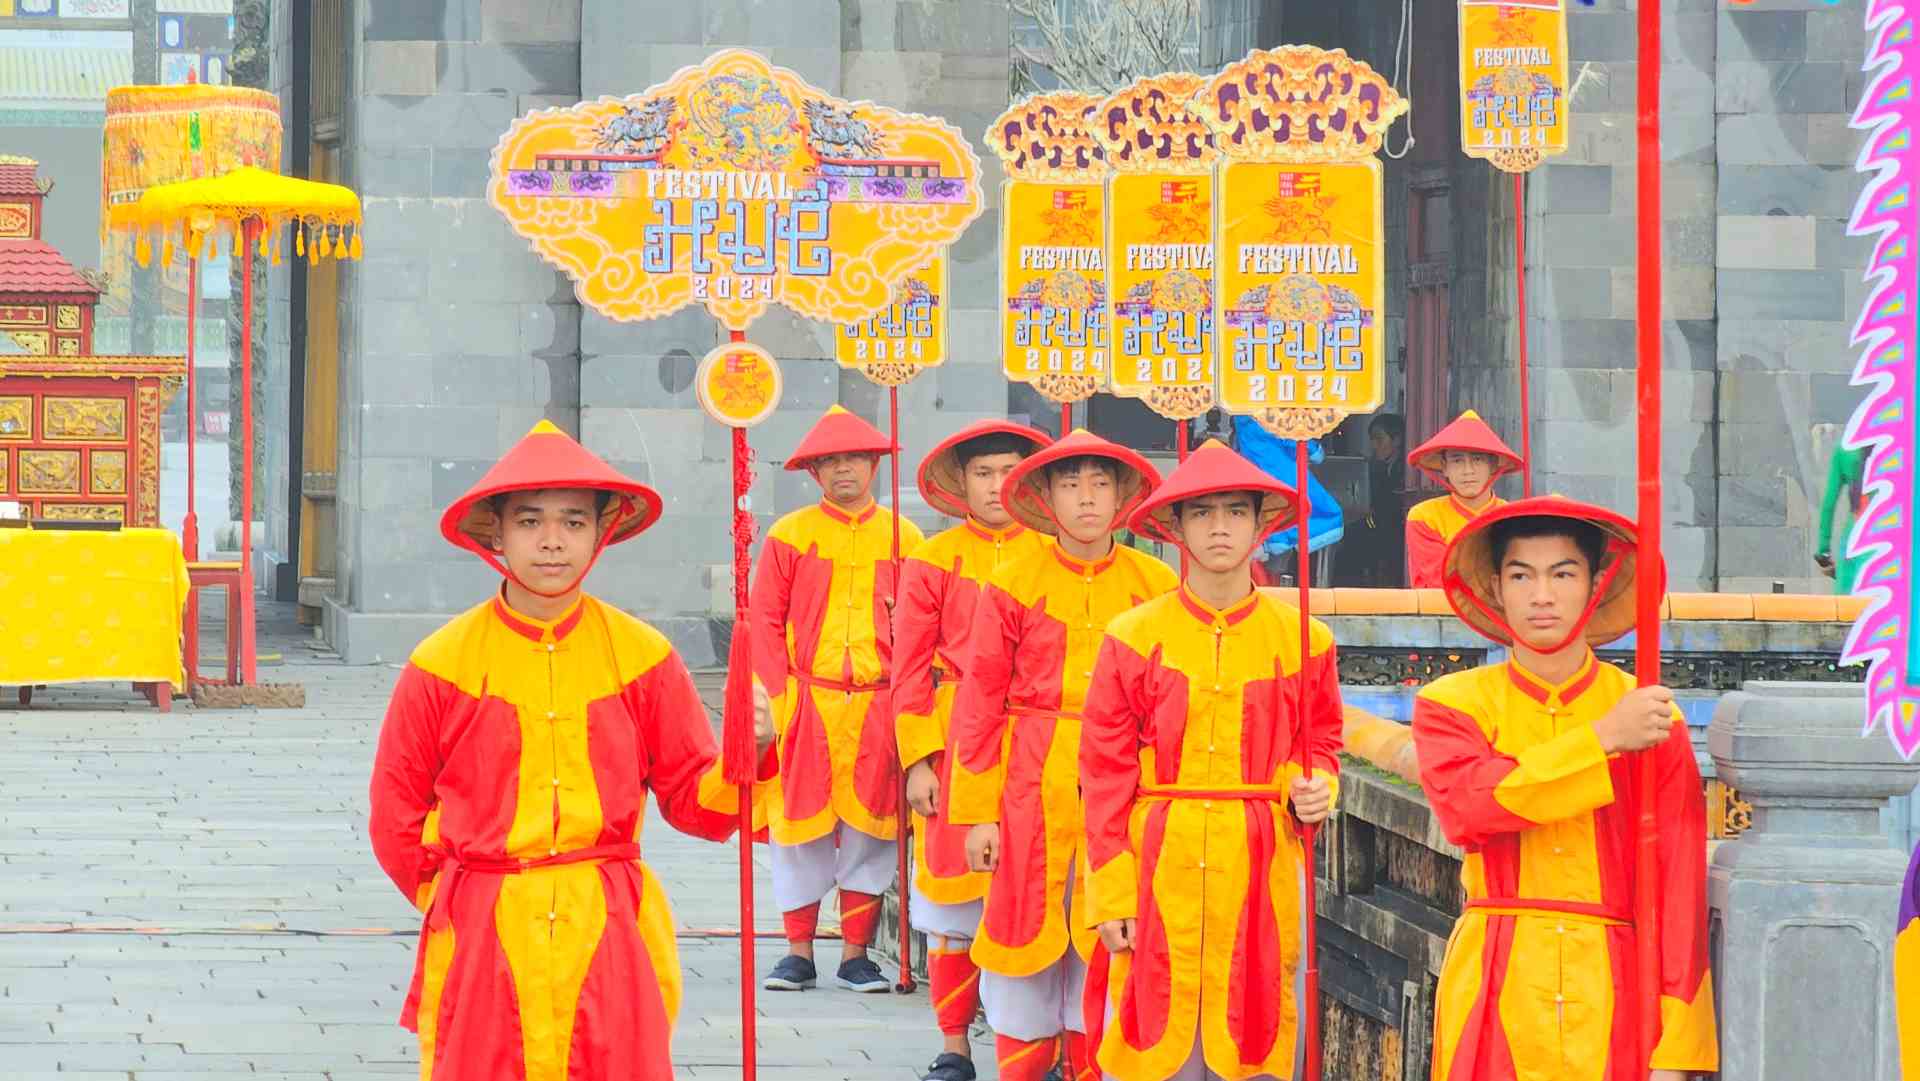 Lịch được tiến vào Hoàng Cung để cho Hoàng gia dùng. Lịch được phát cho các quan ở Kinh Thành, ở các địa phương và phân phát lại trong dân chúng sử dụng.